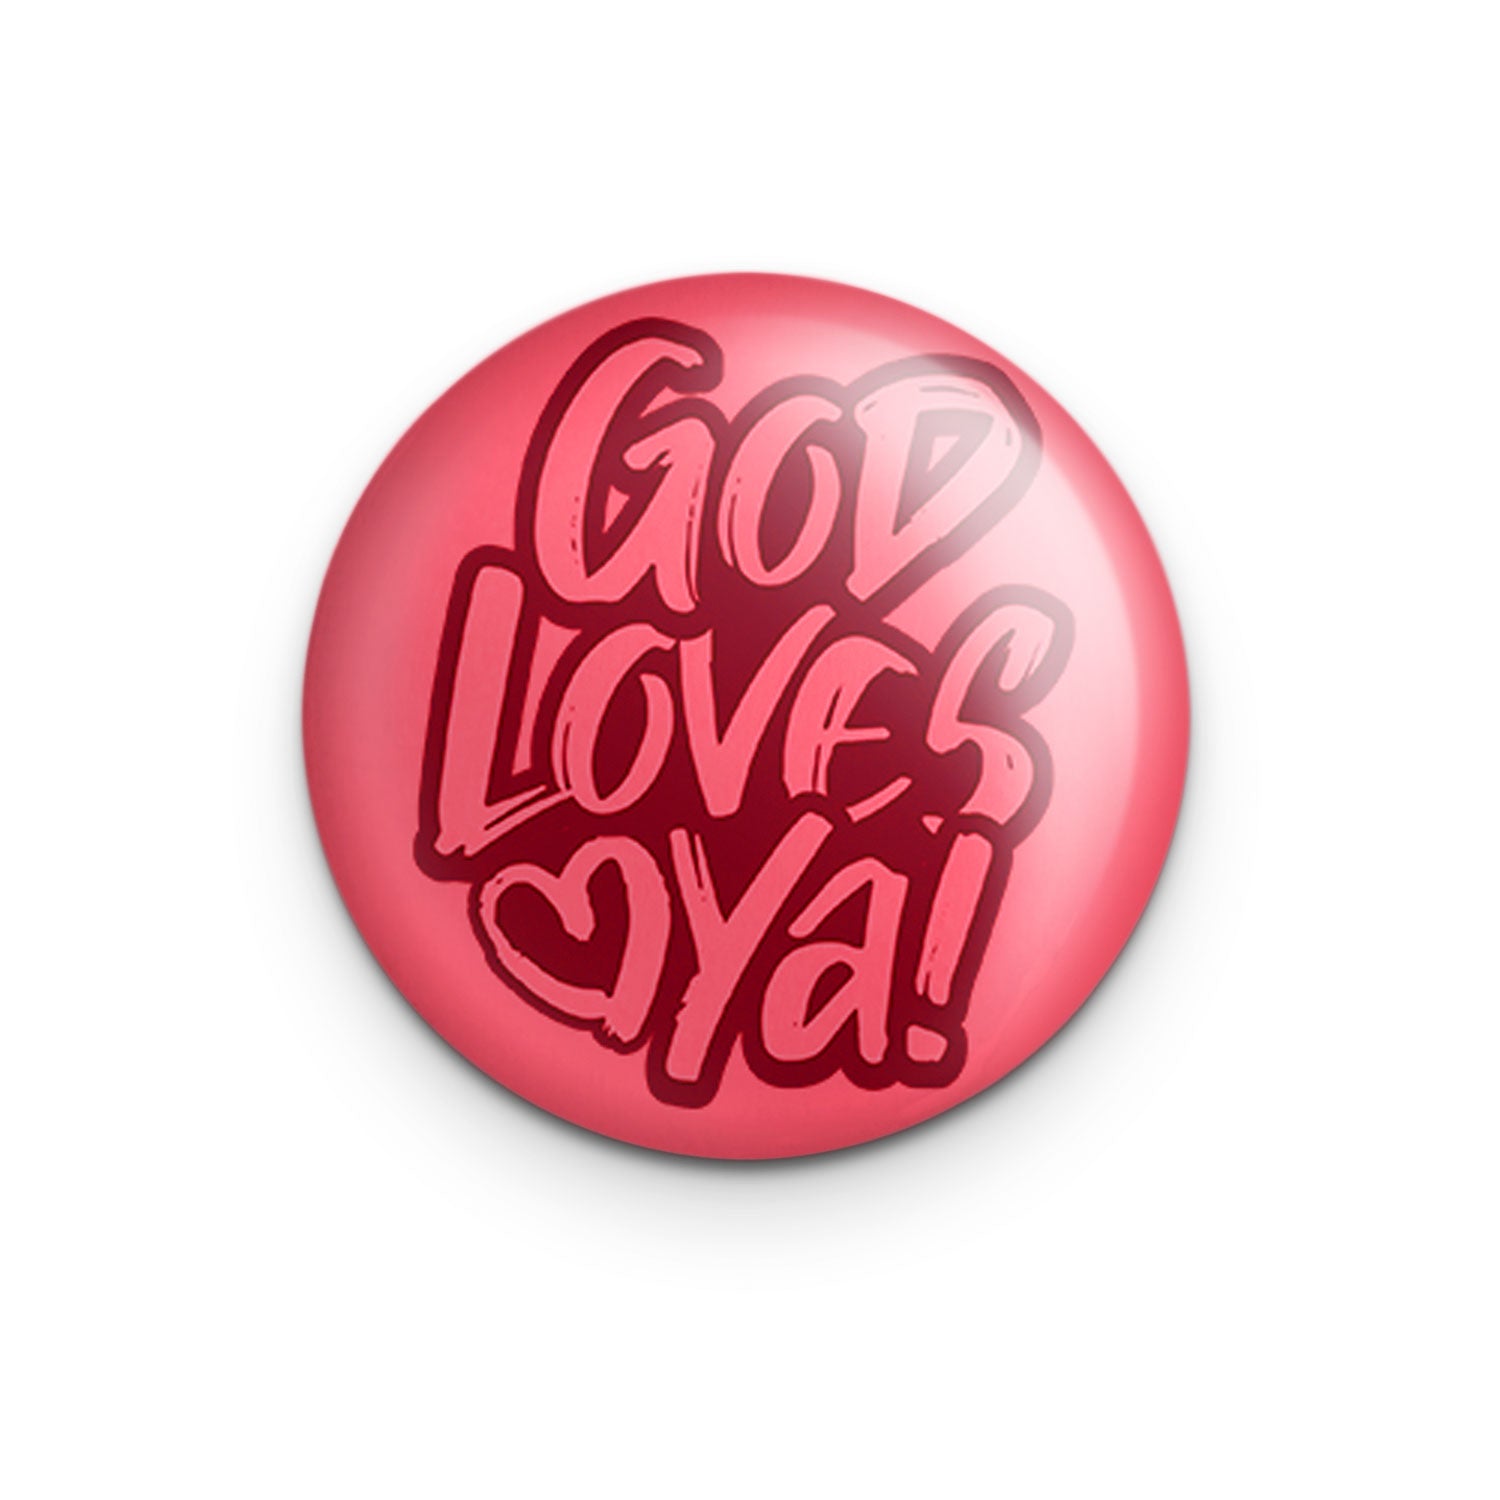 "God Loves Ya" - 1" Round Pinback Button